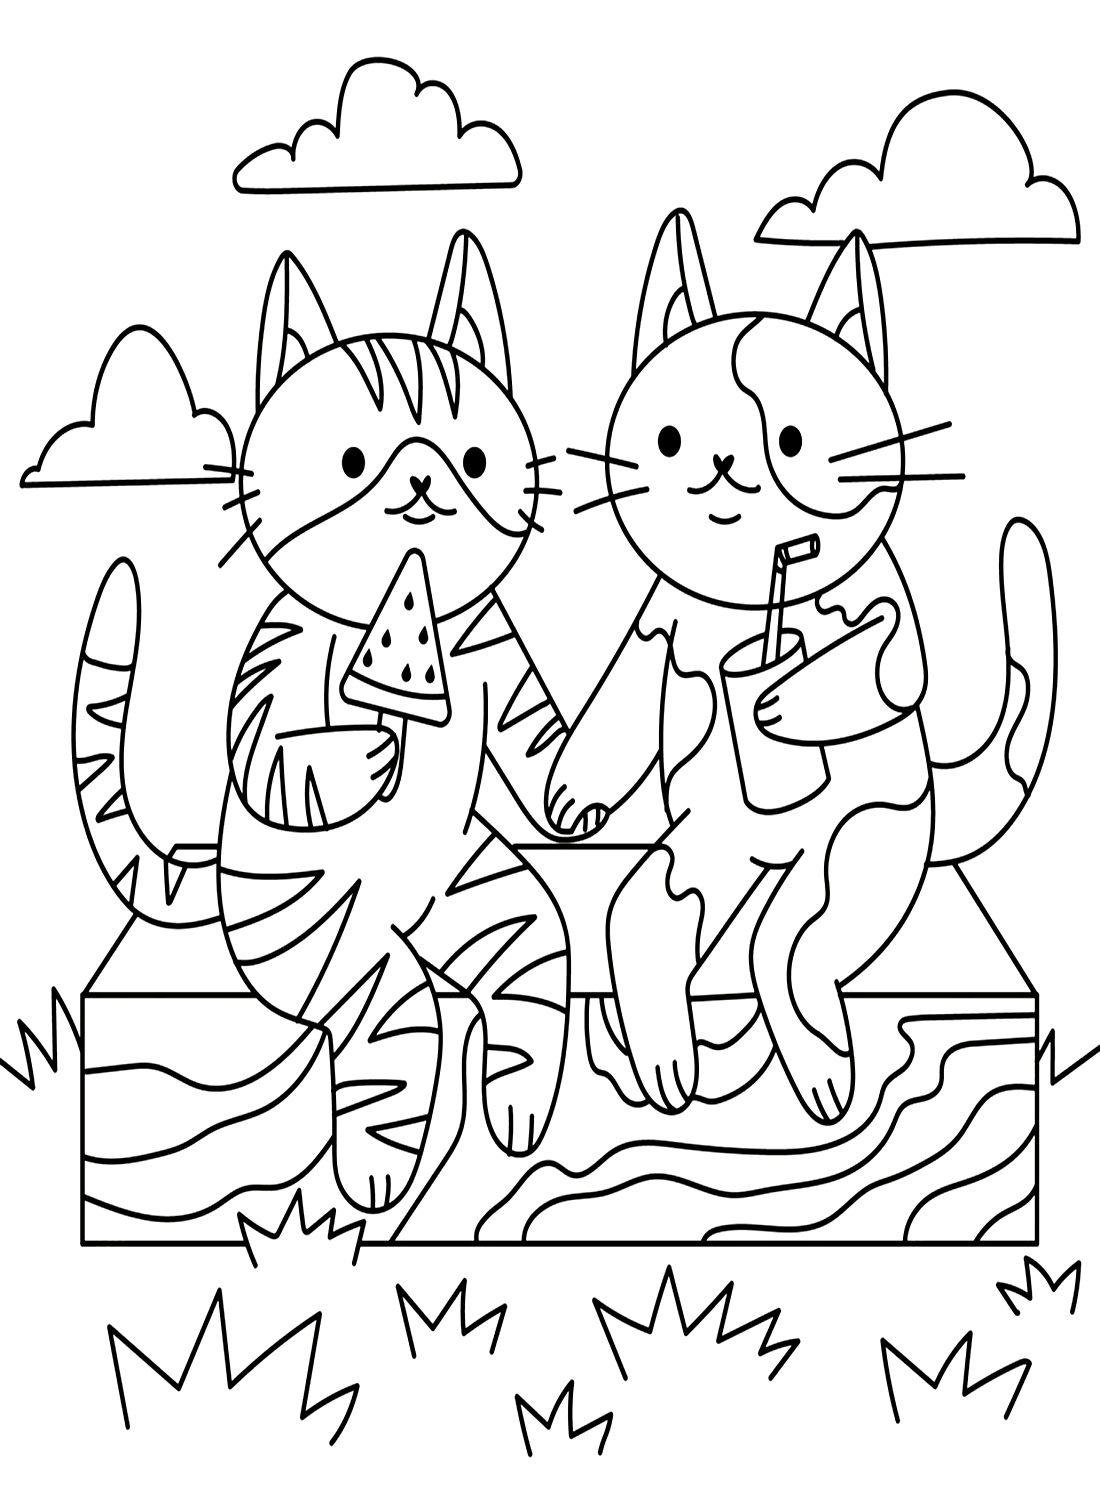 Dibujos para colorear de la amistad de los gatos de La amistad